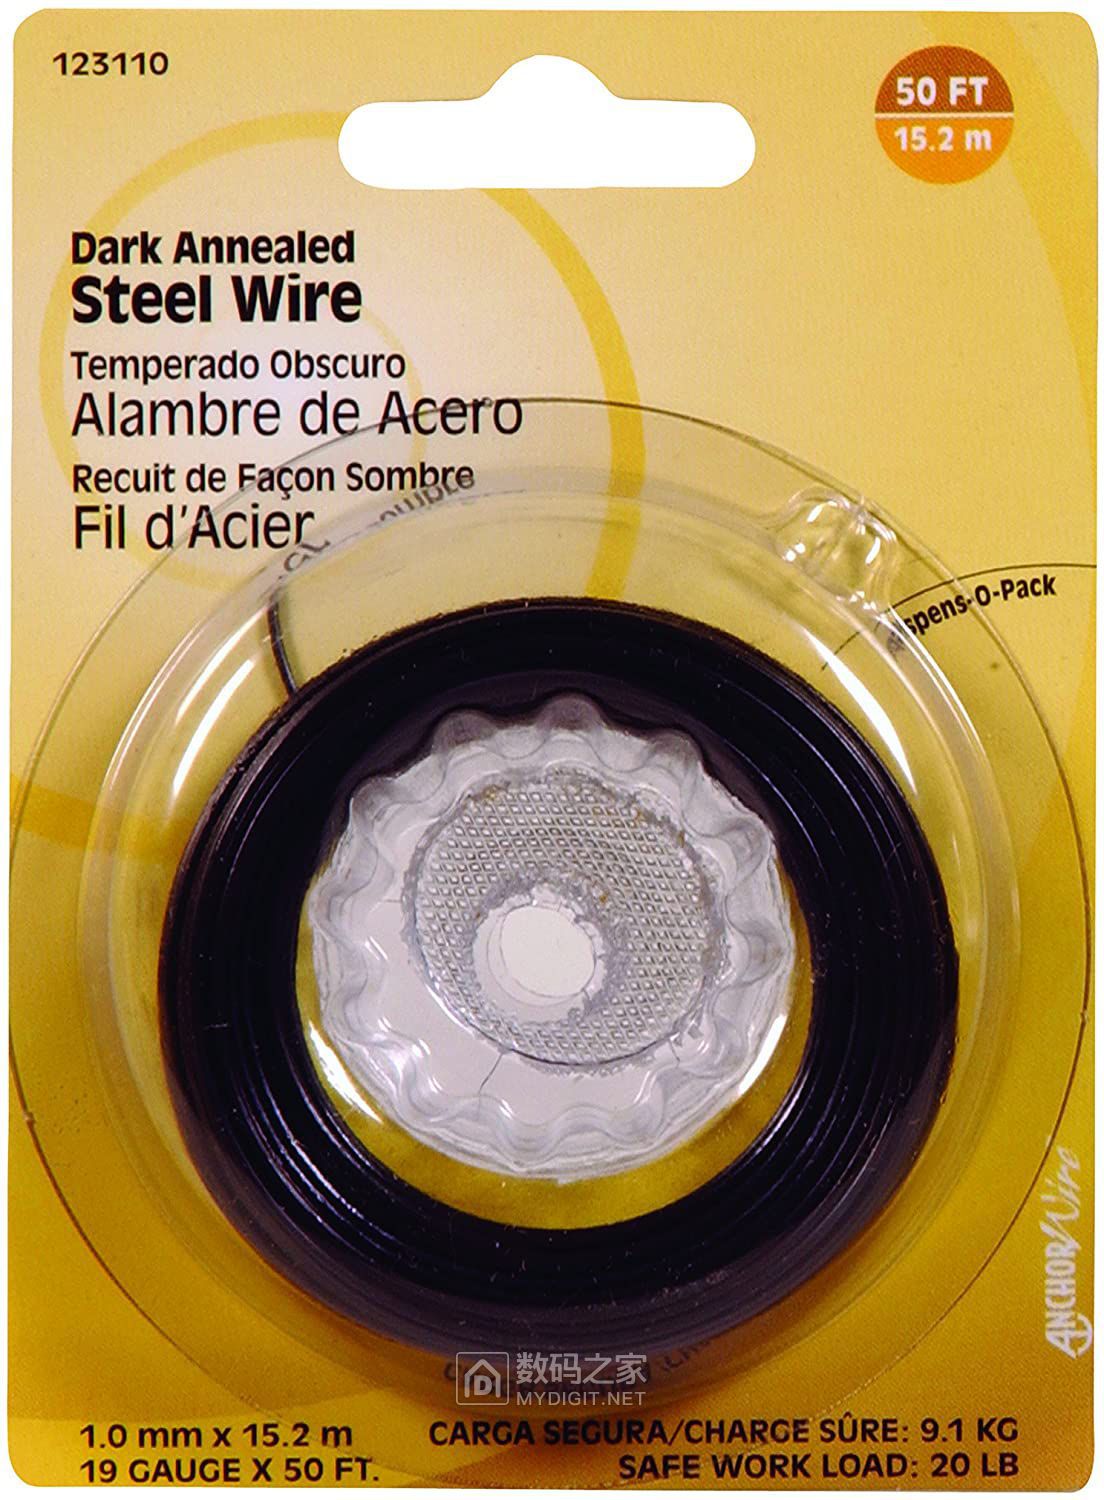 dark annealed steel wire.jpg